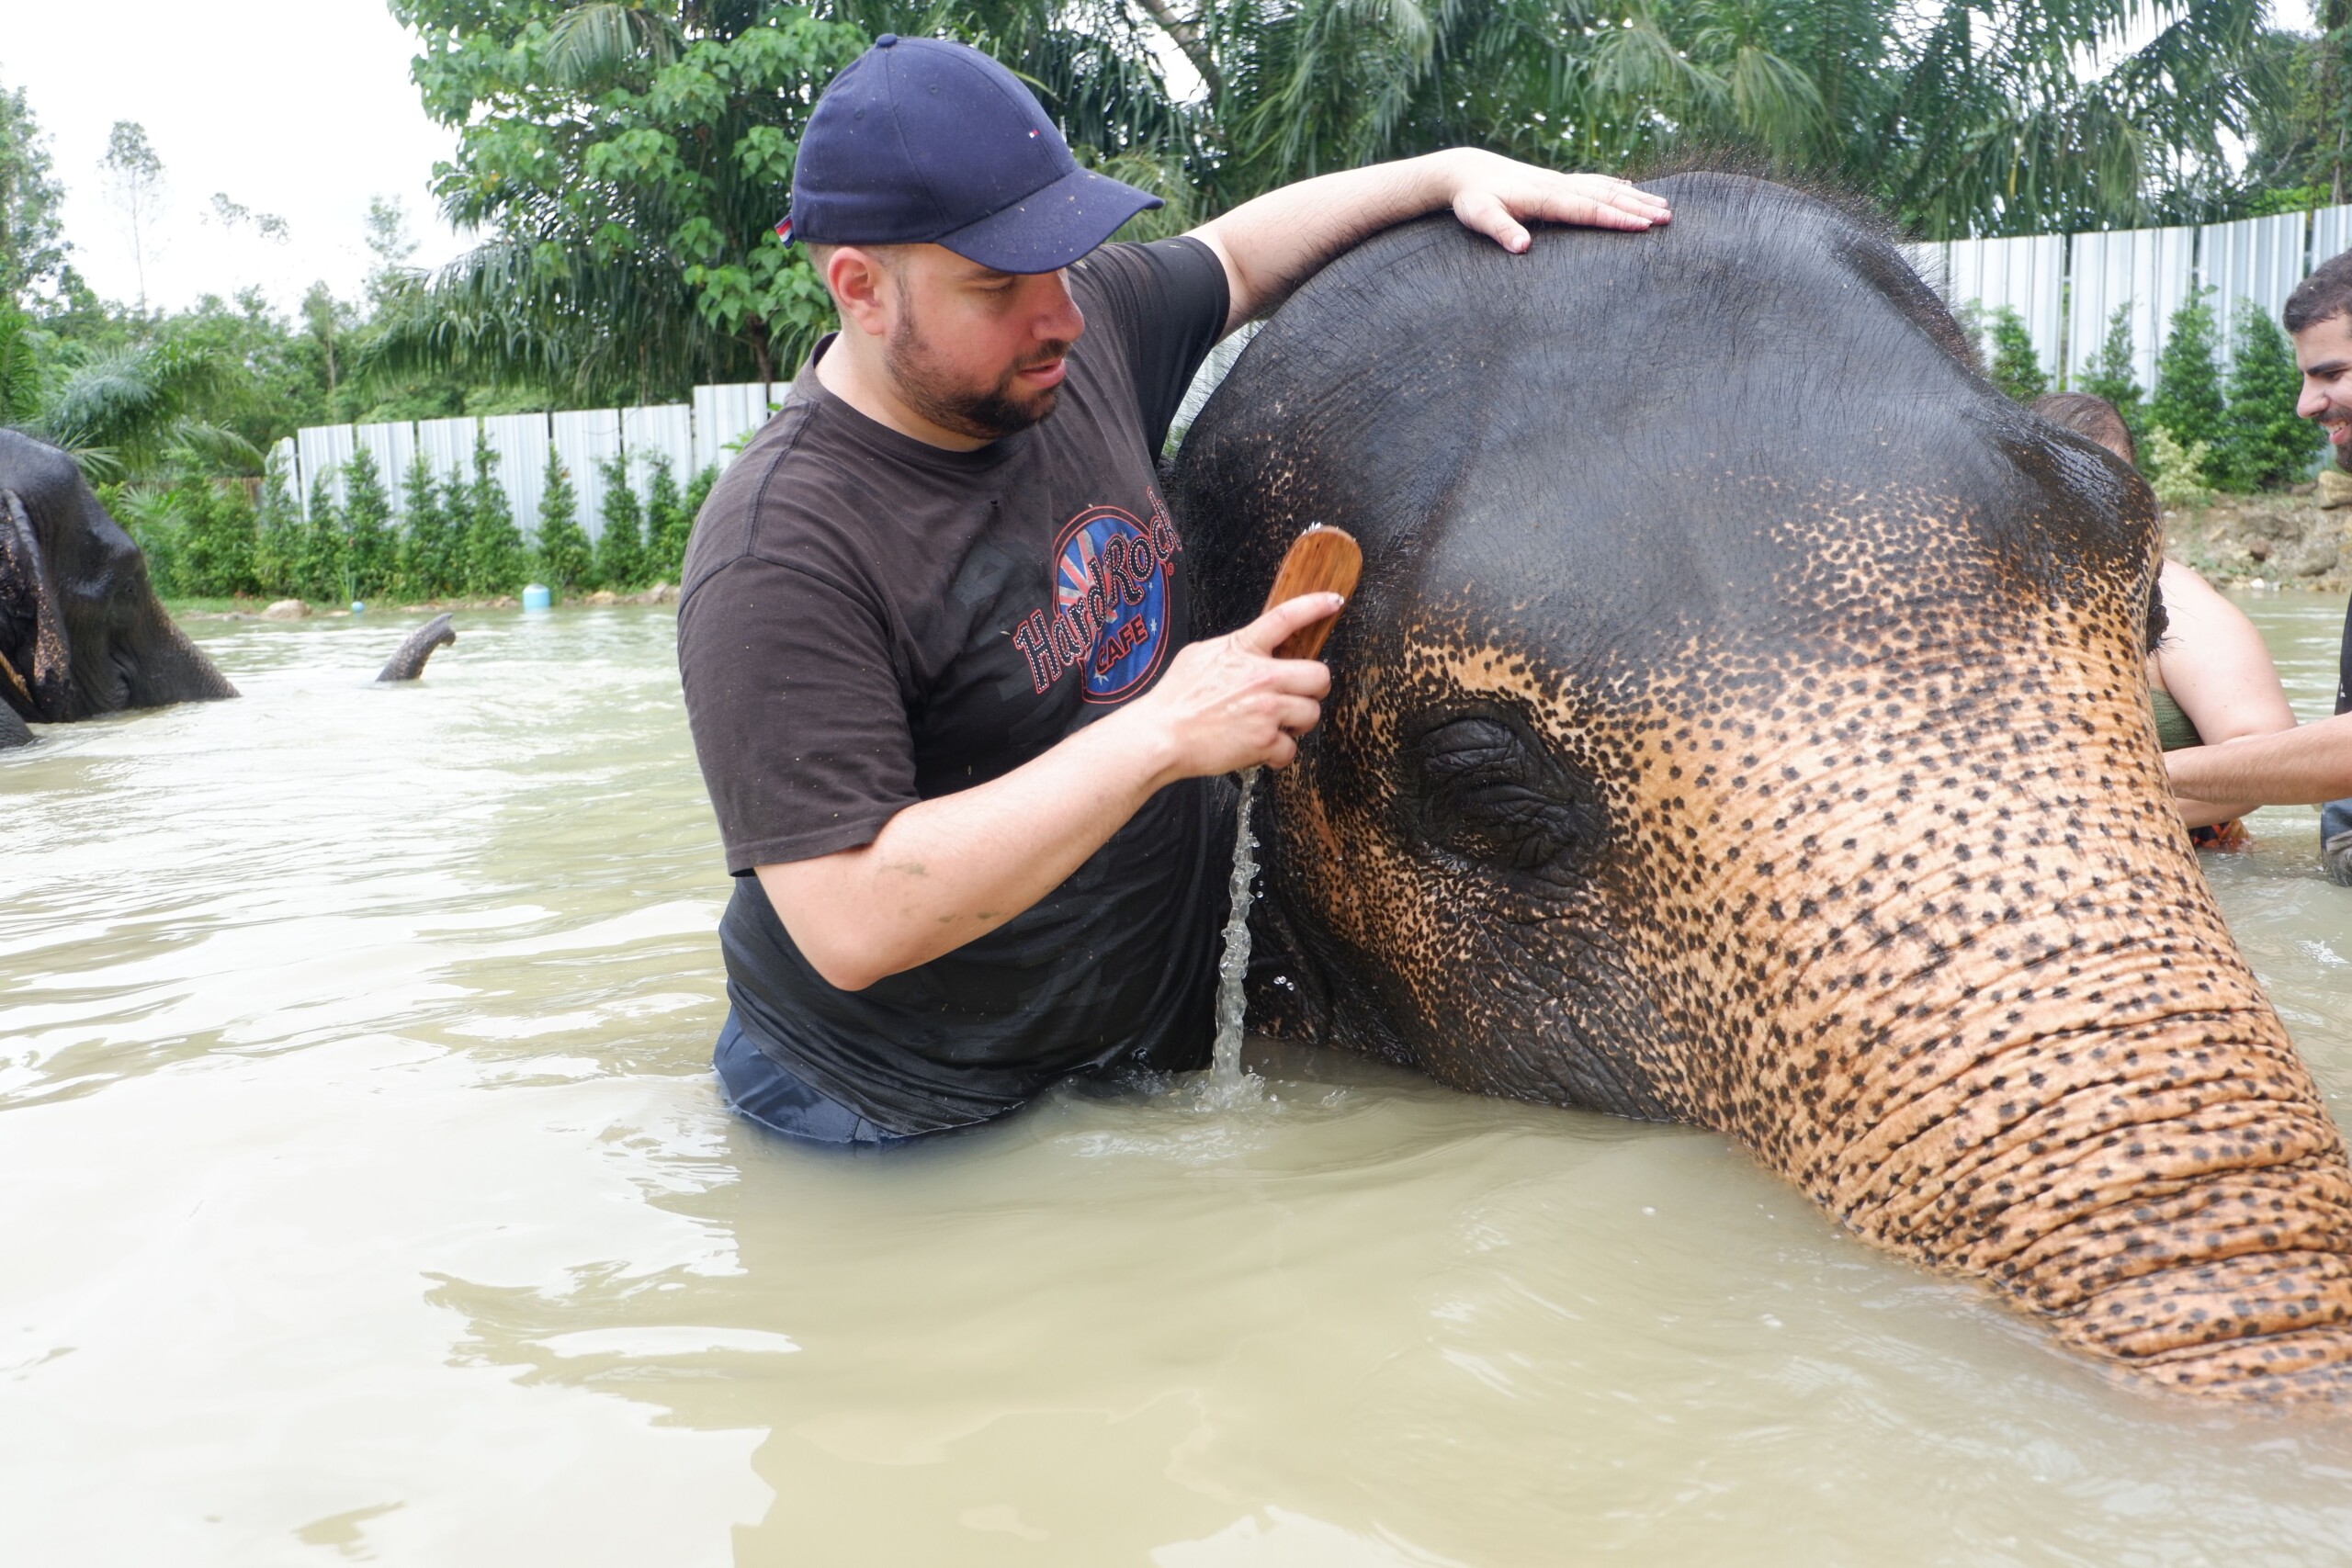 Turismo ecológico na Tailândia: babá de elefante por um dia!